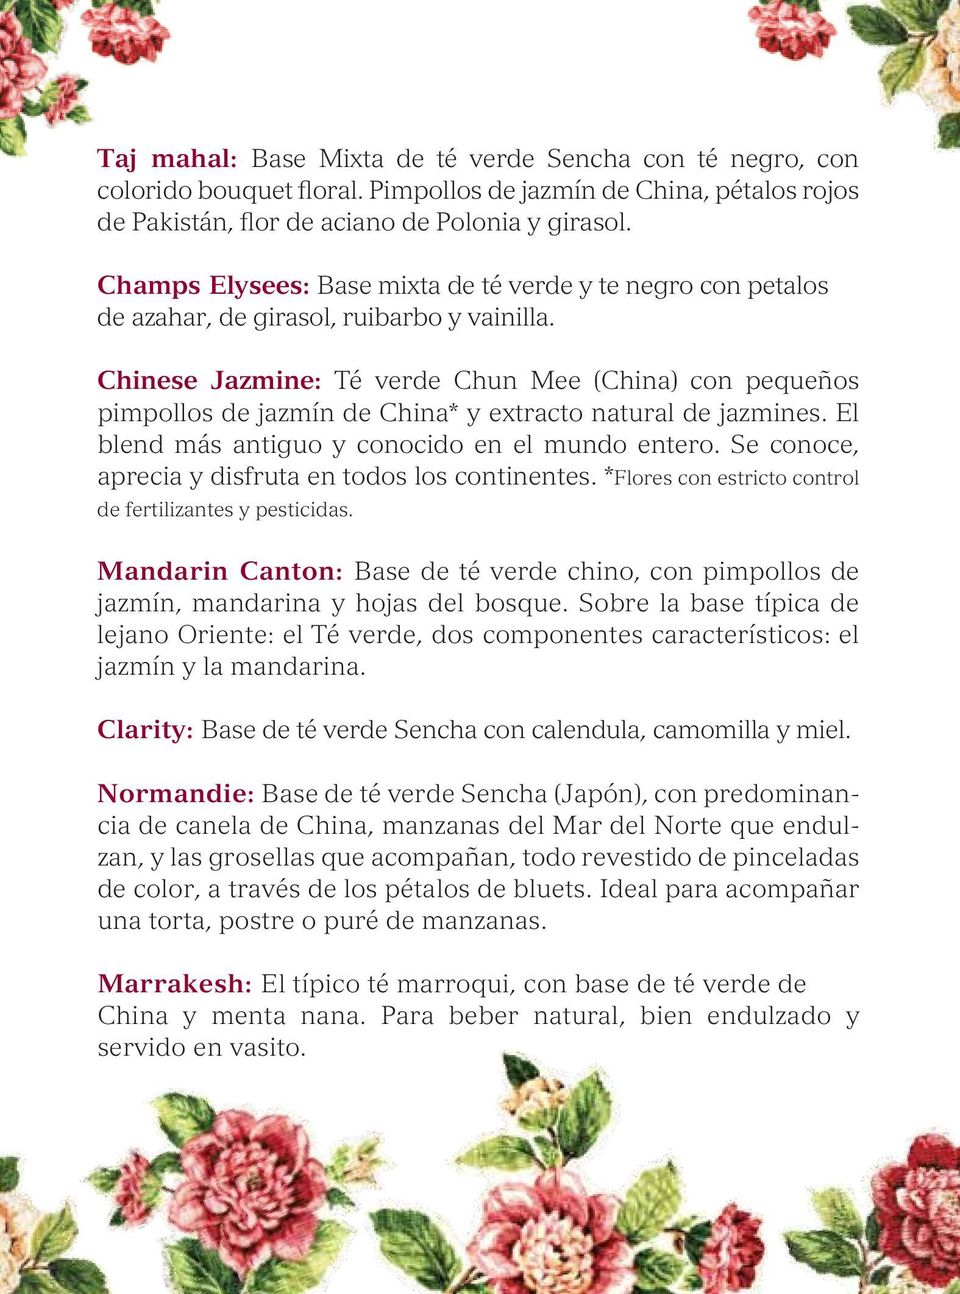 Chinese Jazmine: Té verde Chun Mee (China) con pequeños pimpollos de jazmín de China* y extracto natural de jazmines. El blend más antiguo y conocido en el mundo entero.